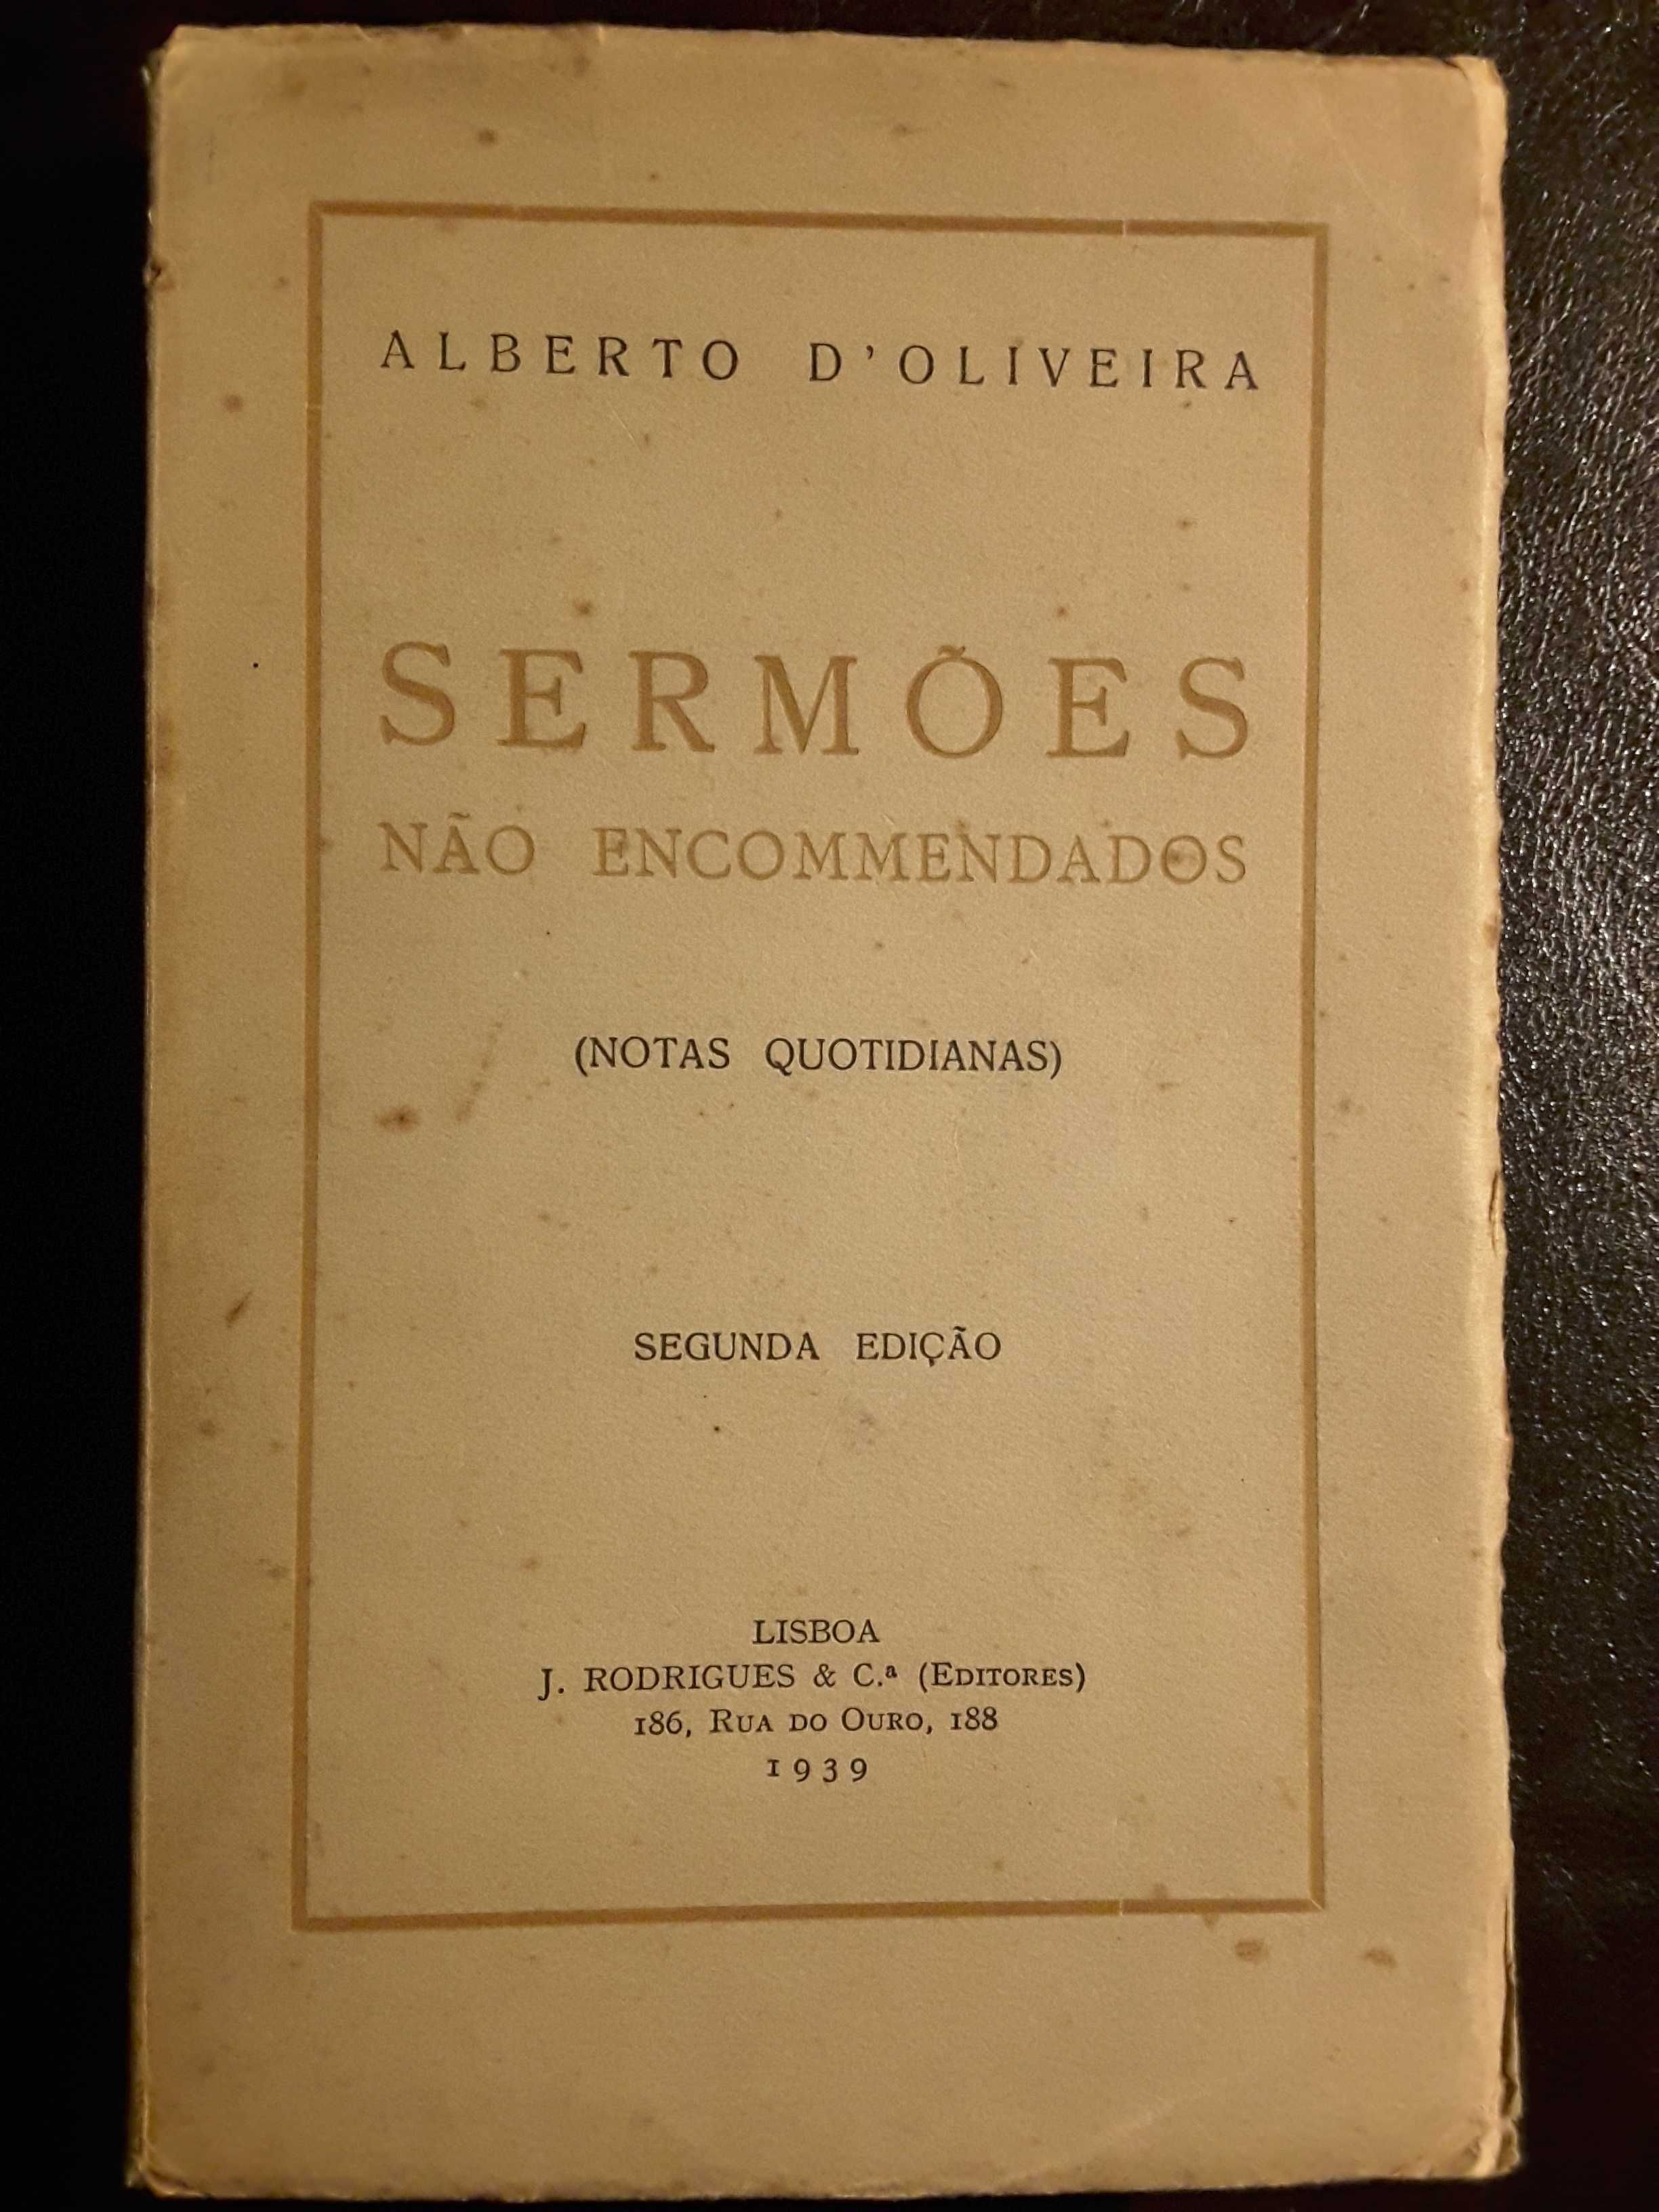 Alberto de Oliveira / Antero de Figueiredo / Luís de Magalhães